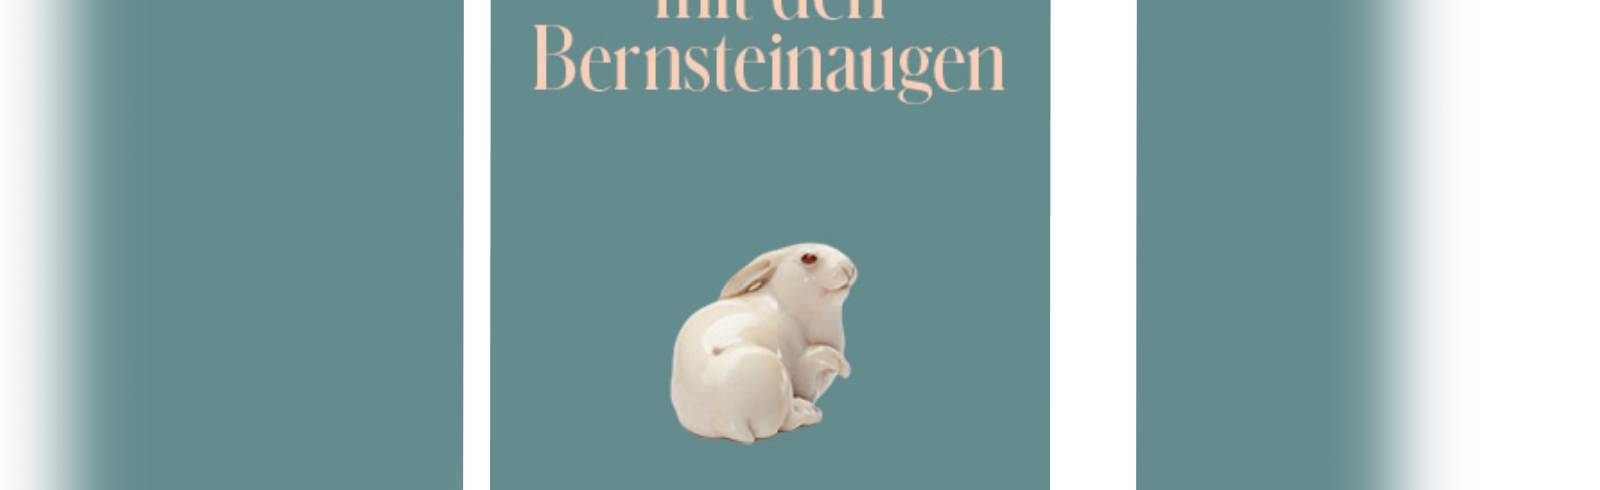 Gratisbuch 2021: Der Hase mit den Bernsteinaugen